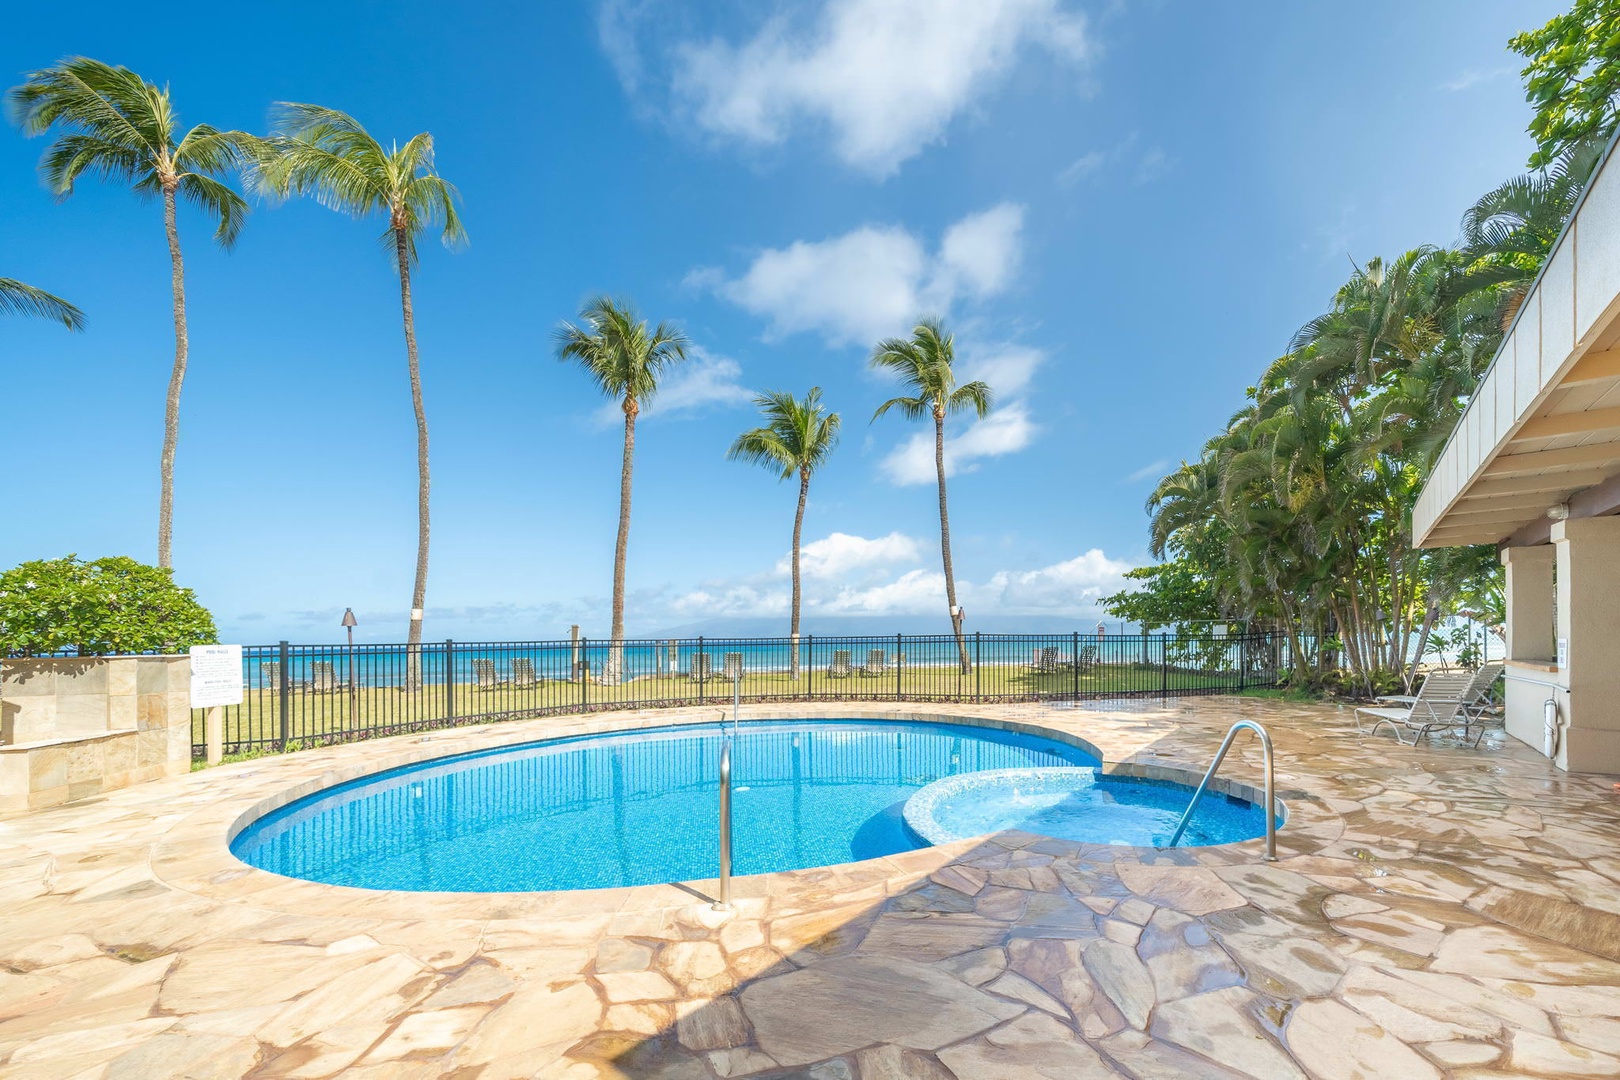 Paki Maui Resort amenities